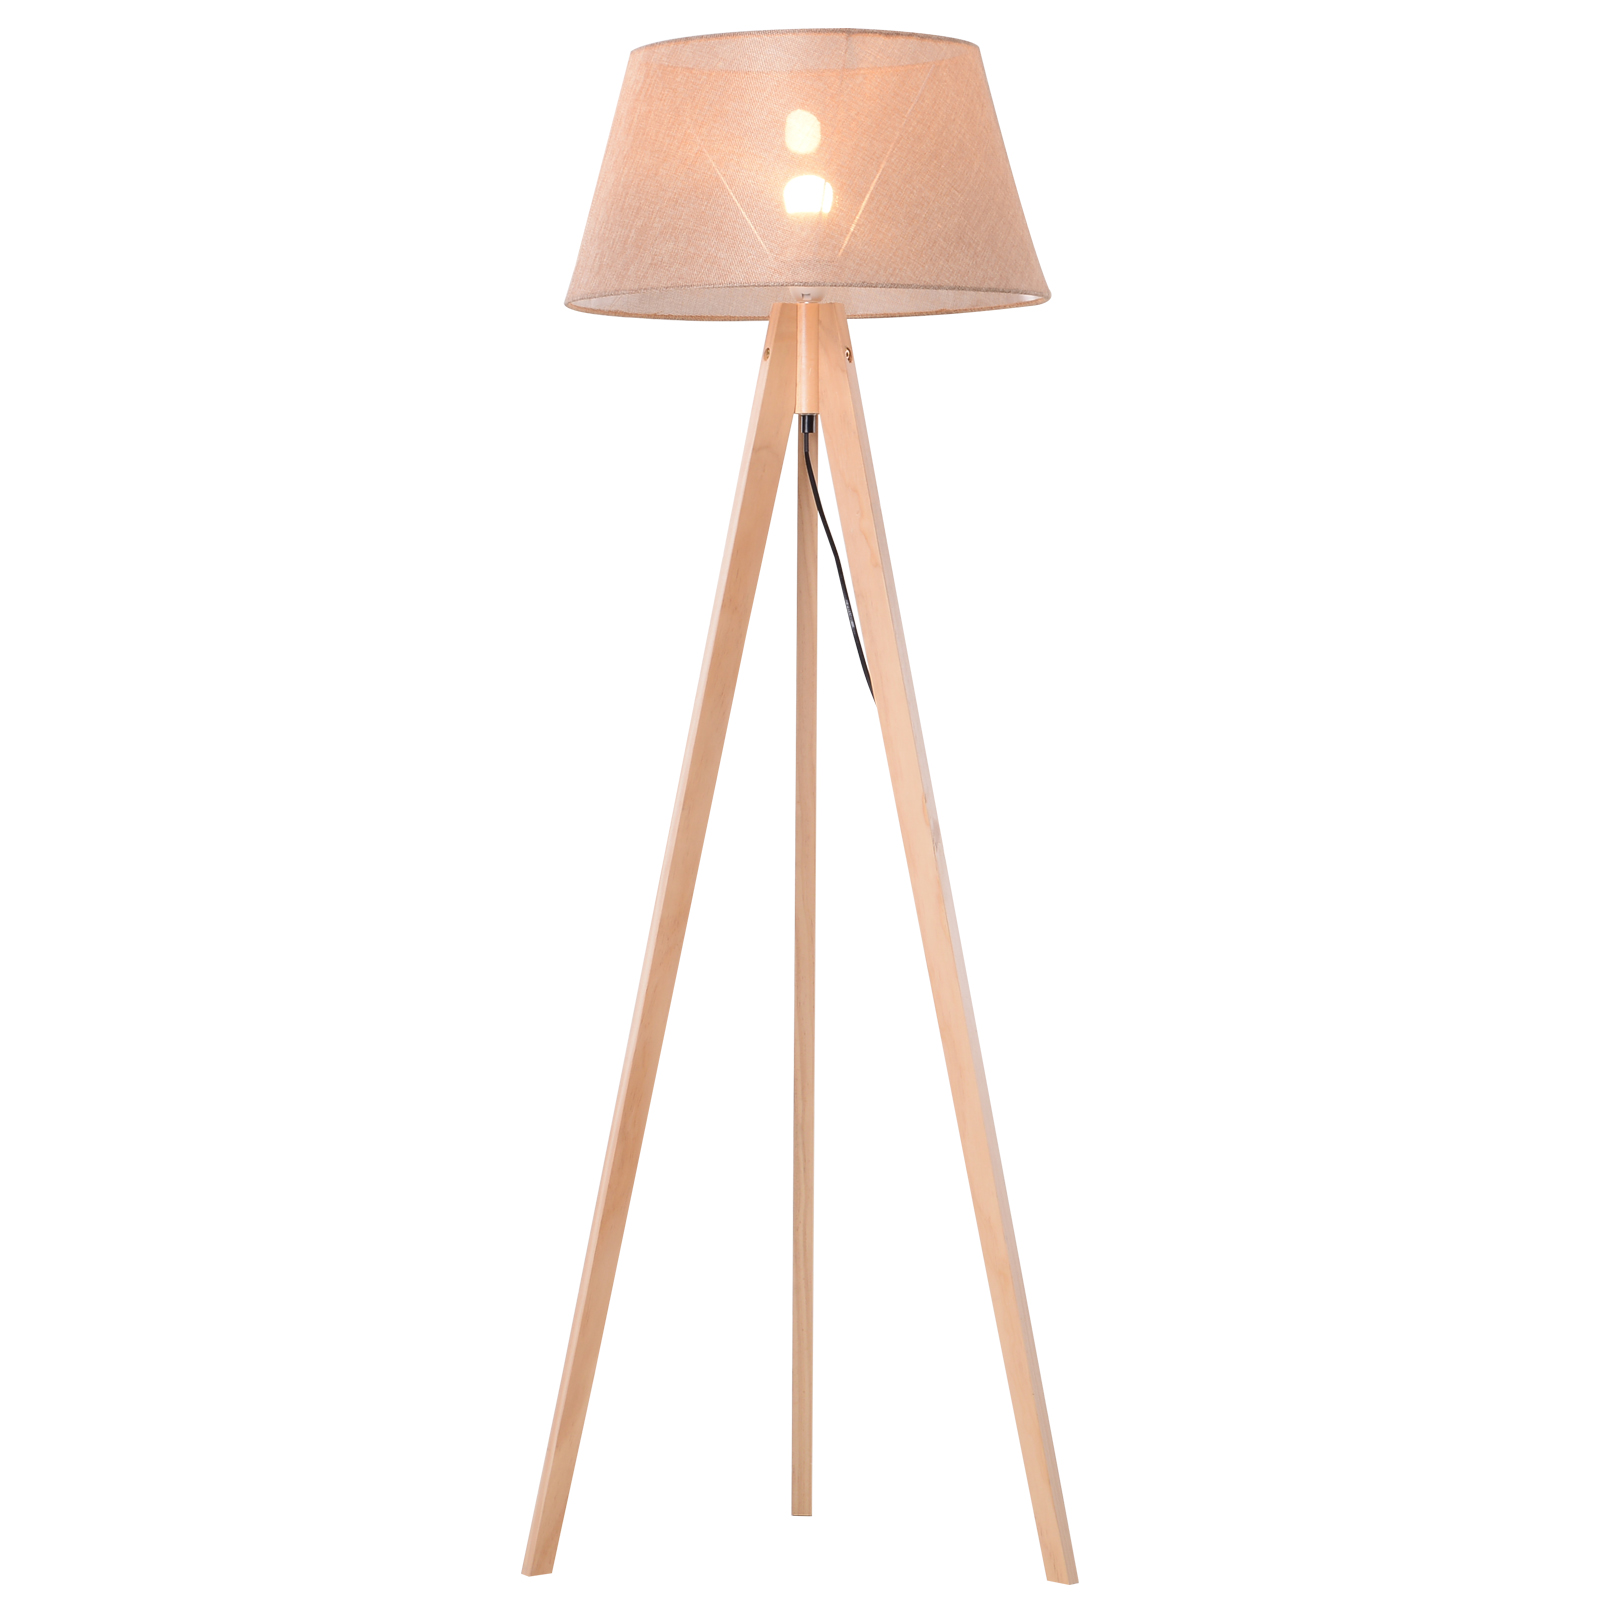 - Holz Stehleuchte Wohnzimmerlampe 1 flammig, E27, A++ Floor Lamp in Weiß aus Textil u.a Standleuchte für Schlafzimmer Skandinavisch Tripod Lampenwelt Dreibein Stehlampe Katie